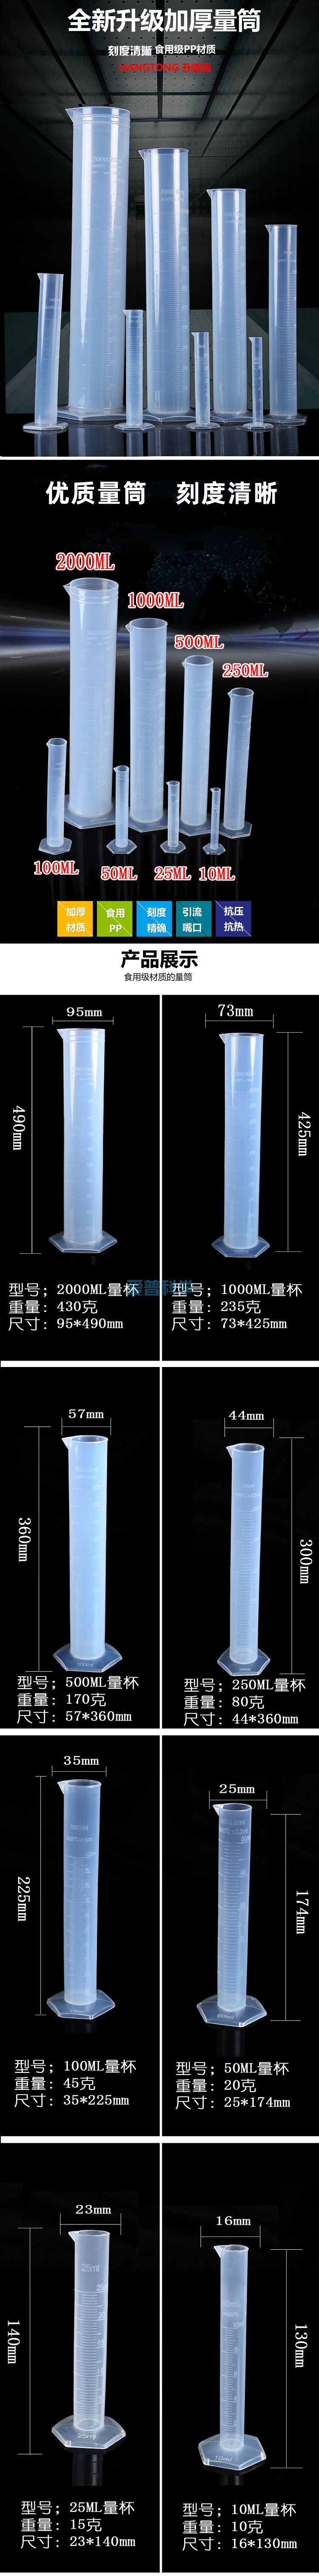 1000ml六角塑料量筒,PP,耐高温防腐蚀(图1)